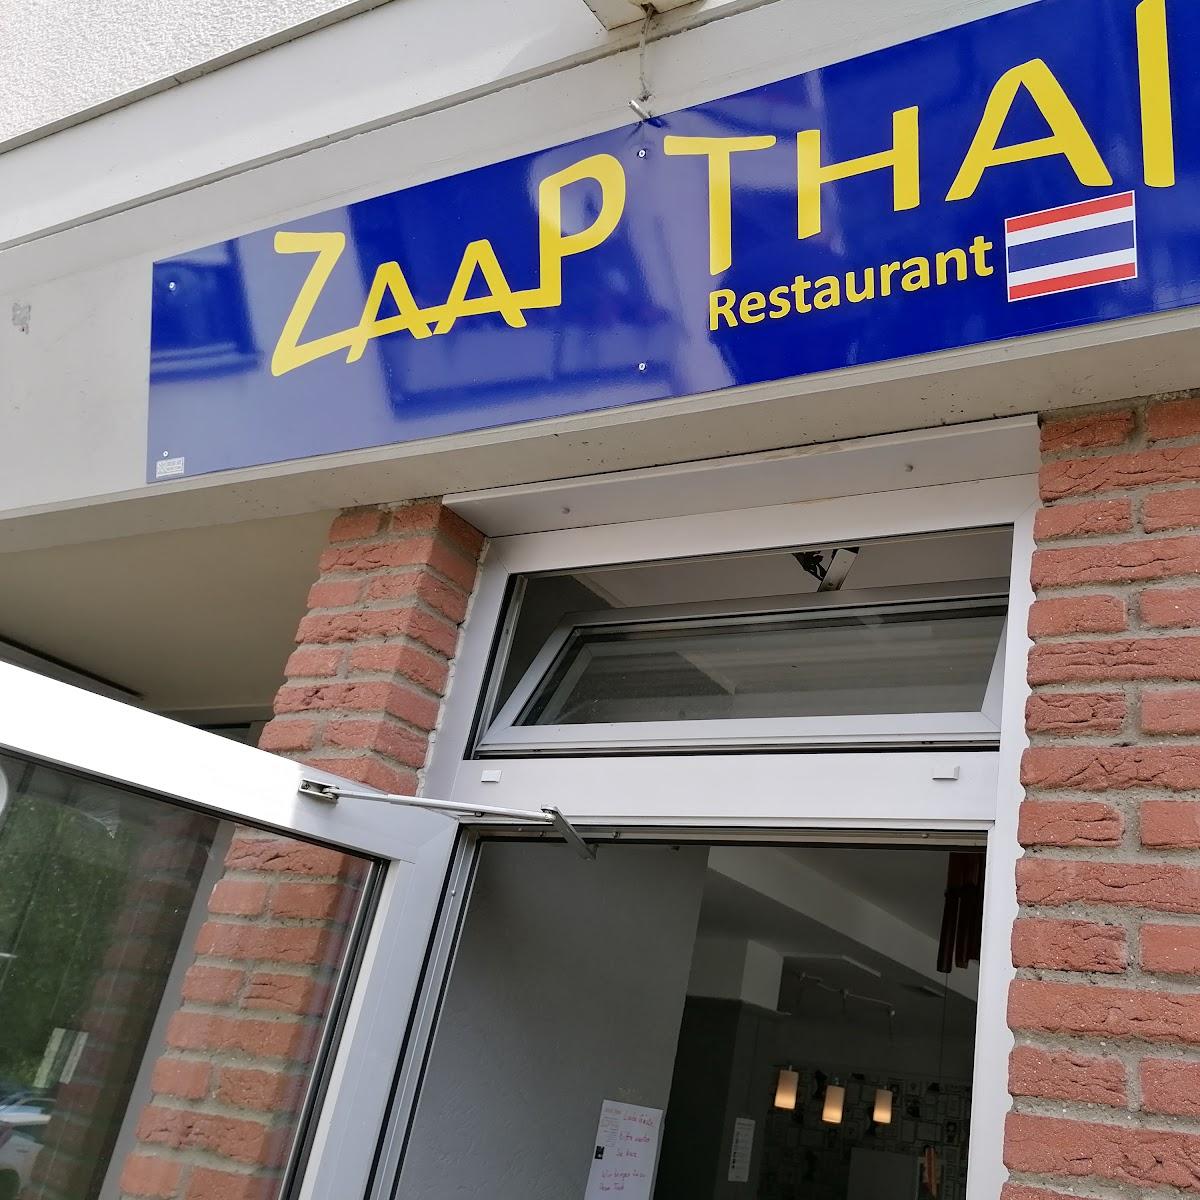 Restaurant "Zaap Thai Restaurant" in Engelskirchen